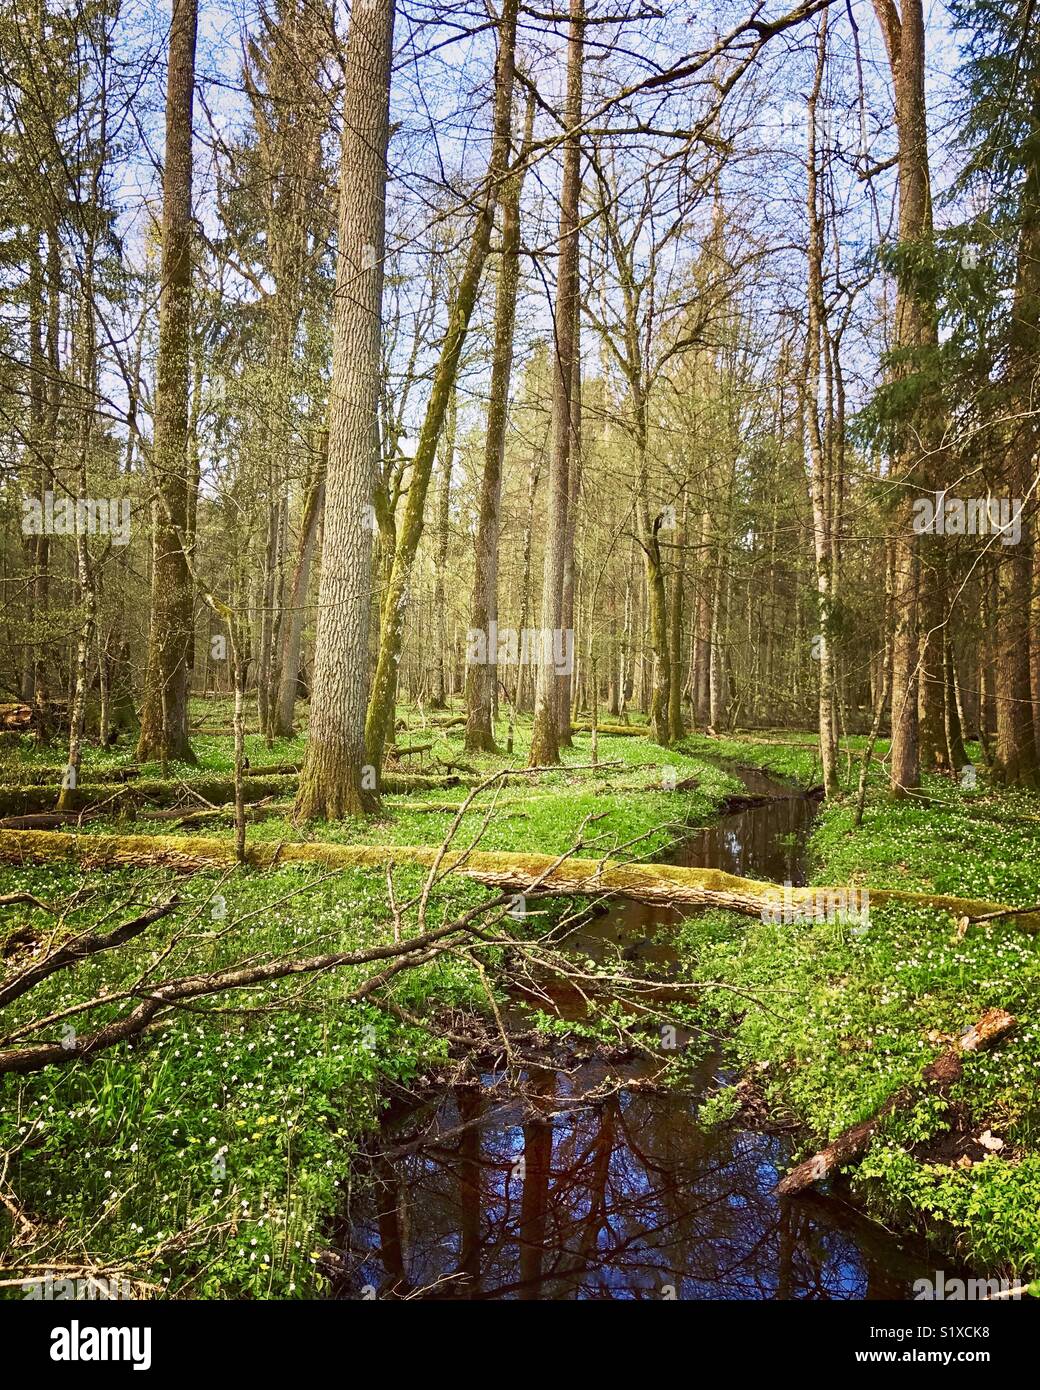 Bialowieza forest, Bialowieza National Park, Poland Stock Photo